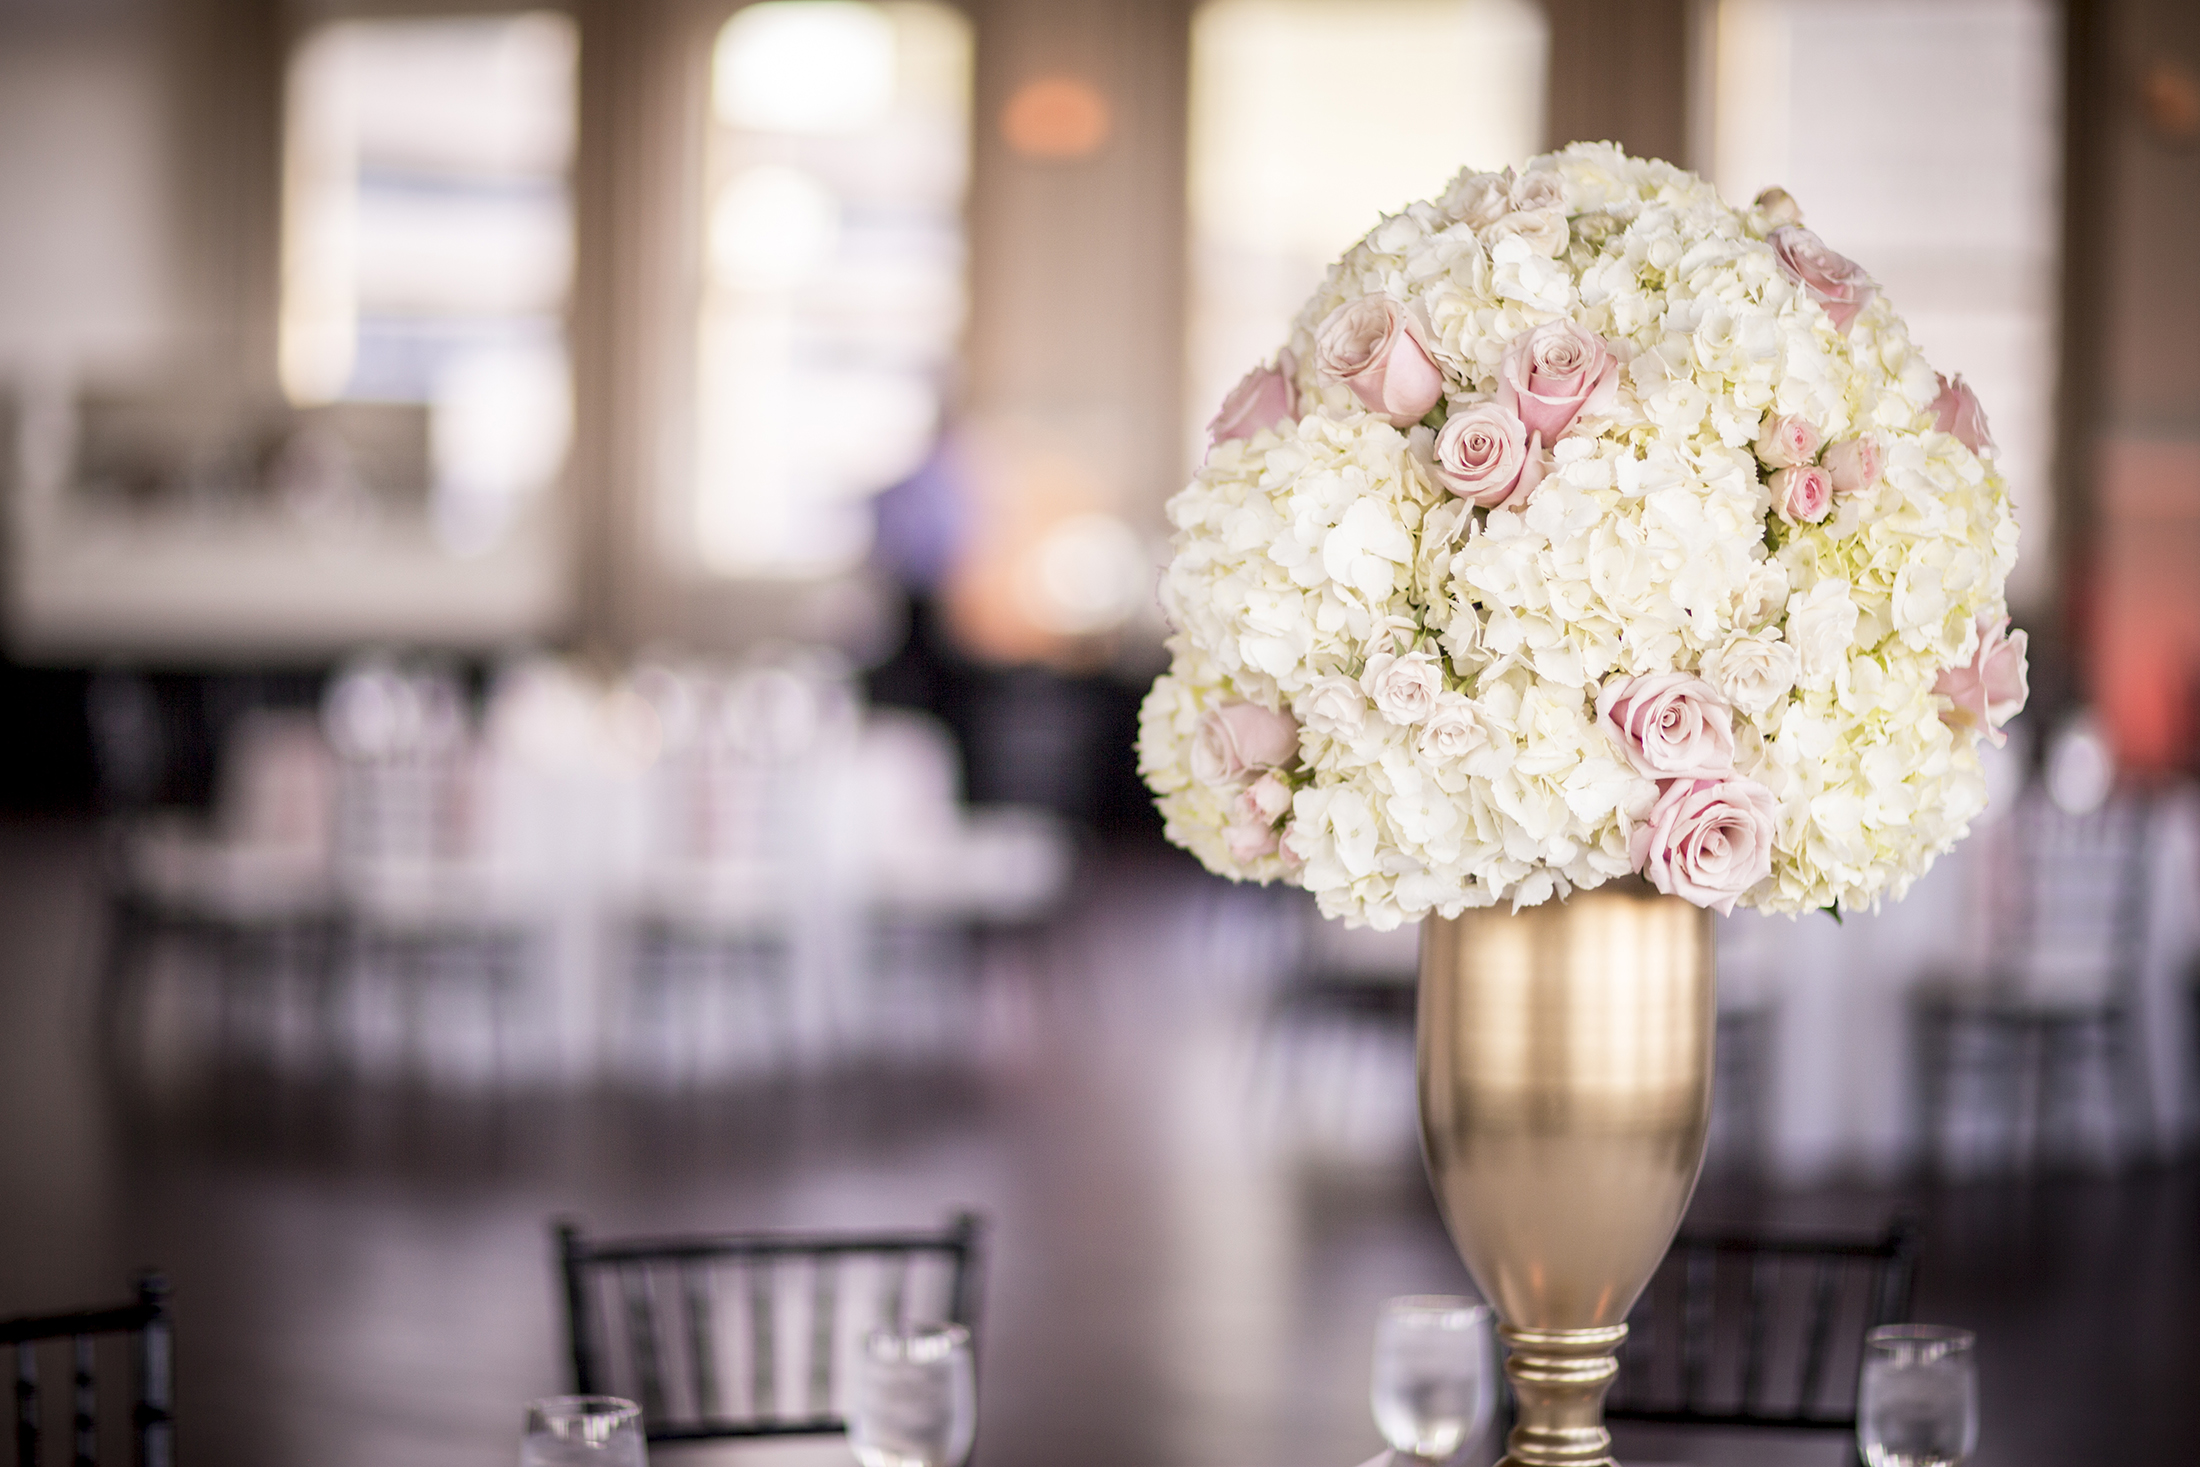 Wedding Planner Dallas | Wedding Florist Dallas - A Stylish Soiree